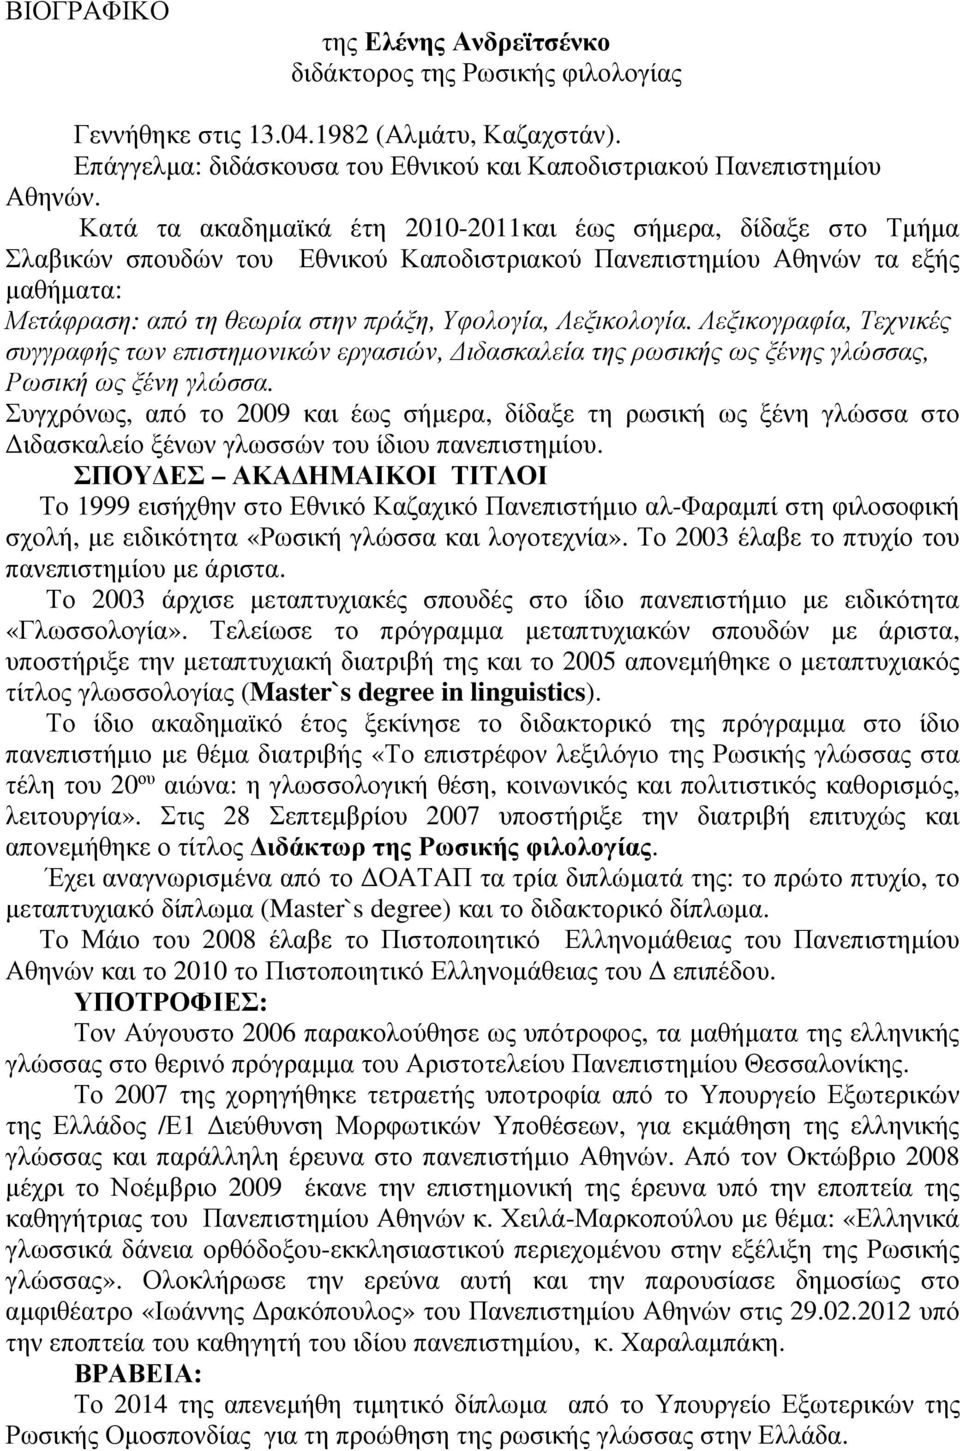 Λεξικολογία. Λεξικογραφία, Τεχνικές συγγραφής των επιστηµονικών εργασιών, ιδασκαλεία της ρωσικής ως ξένης γλώσσας, Ρωσική ως ξένη γλώσσα.